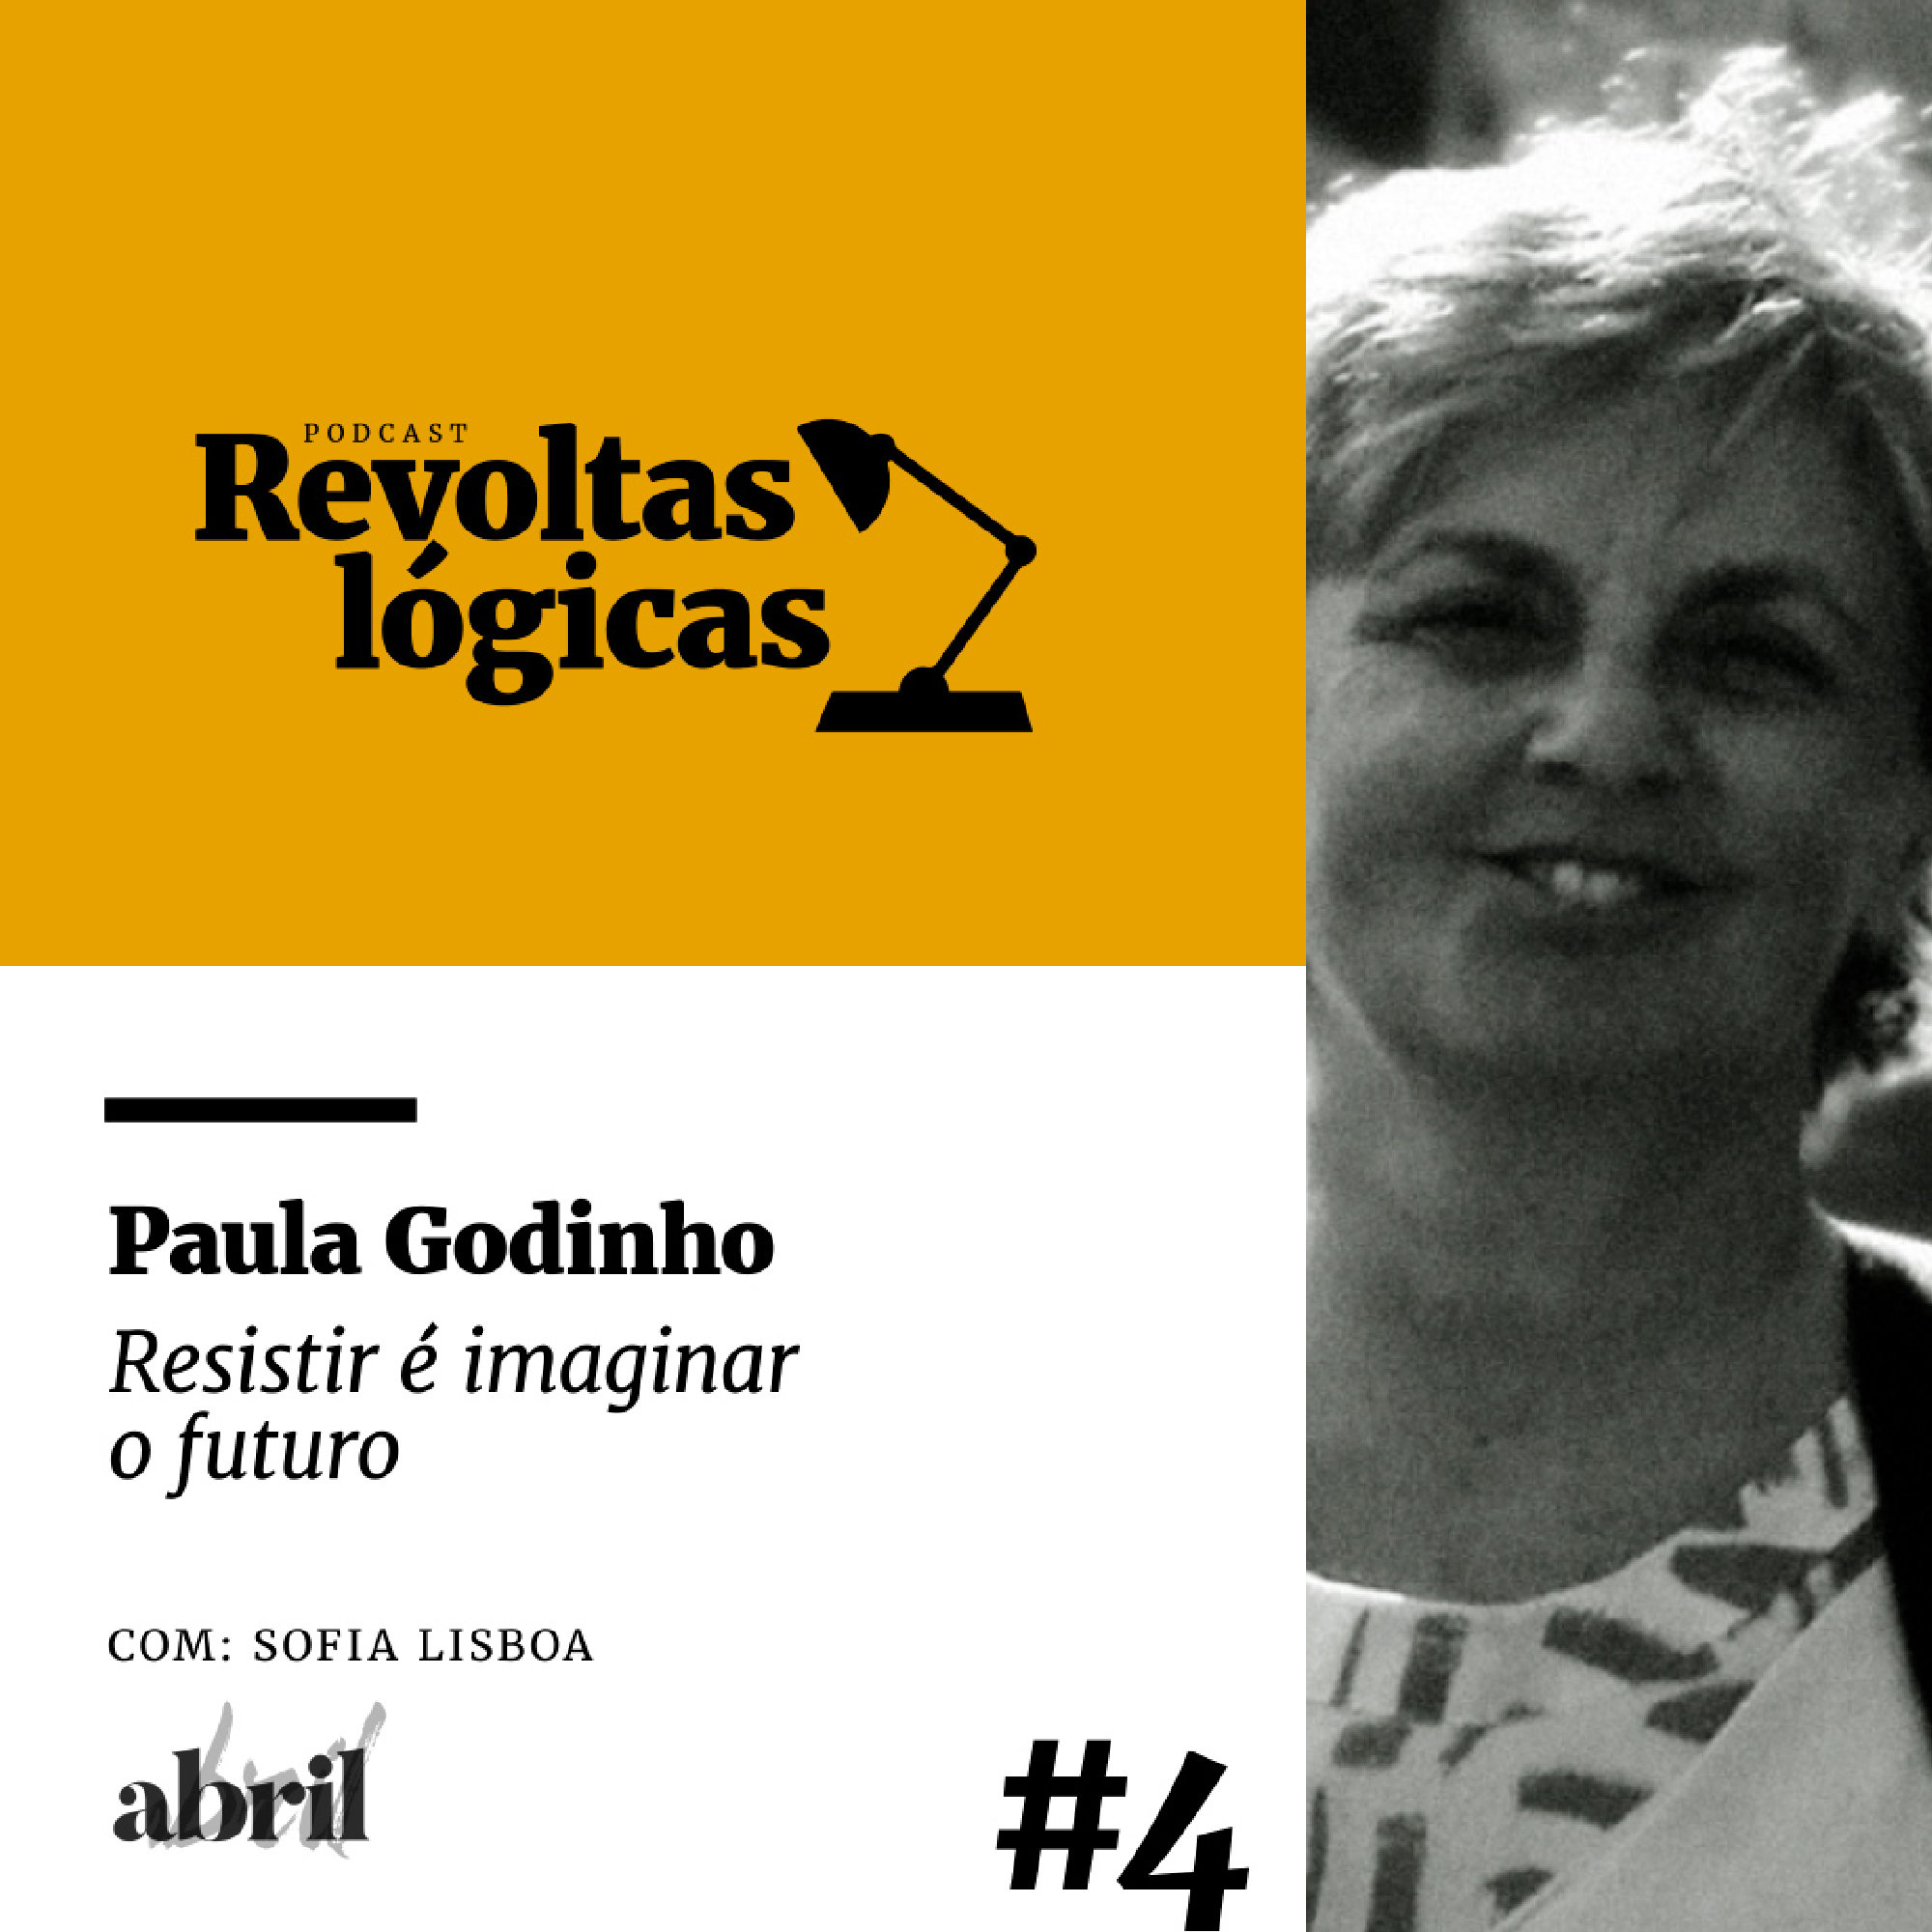 Revoltas lógicas #4 - Paula Godinho - Resistir é imaginar o futuro